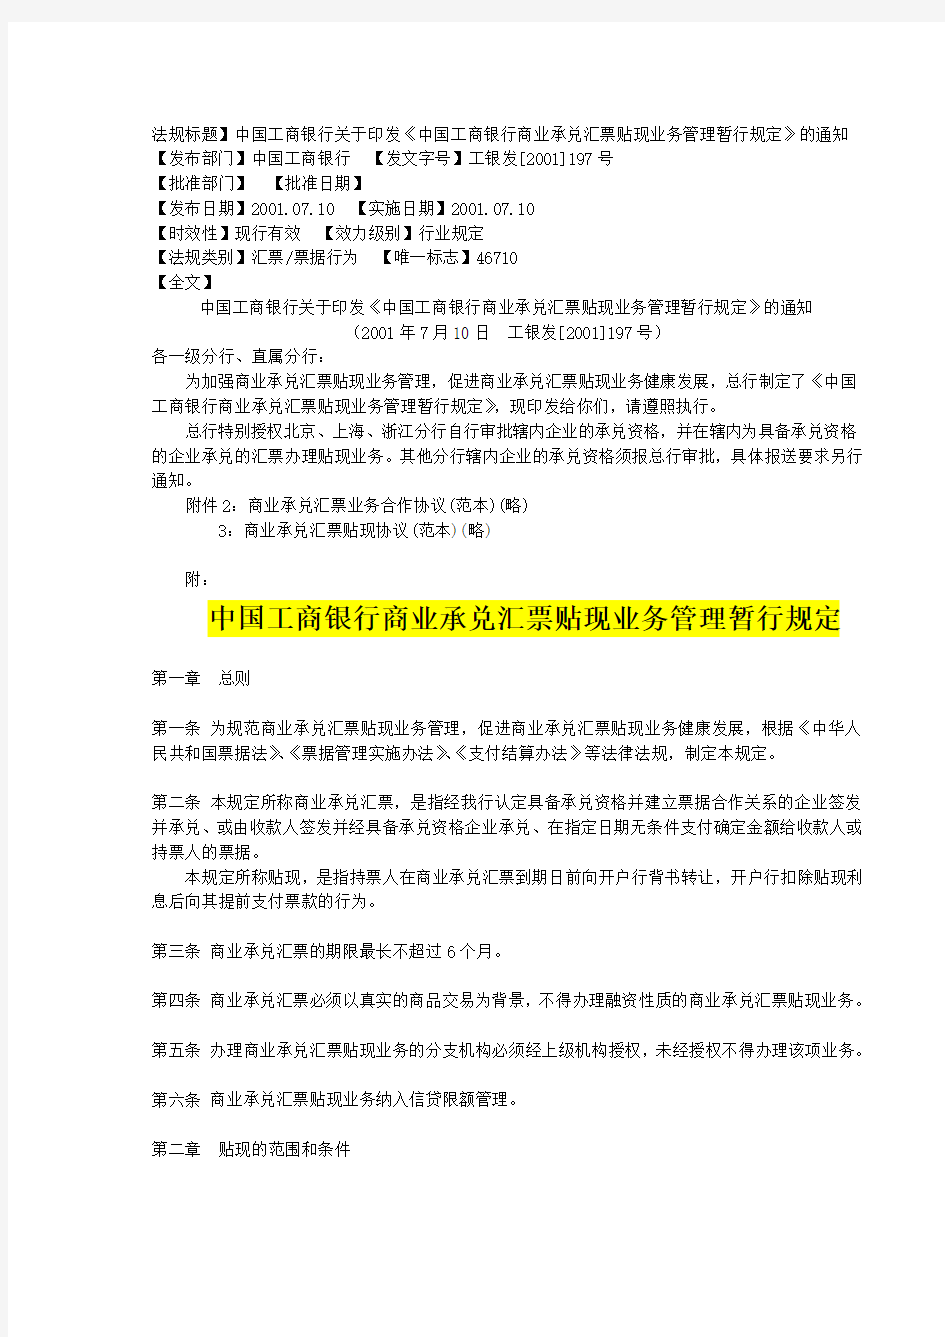 商业承兑汇票贴现业务管理暂行规定中国工商银行